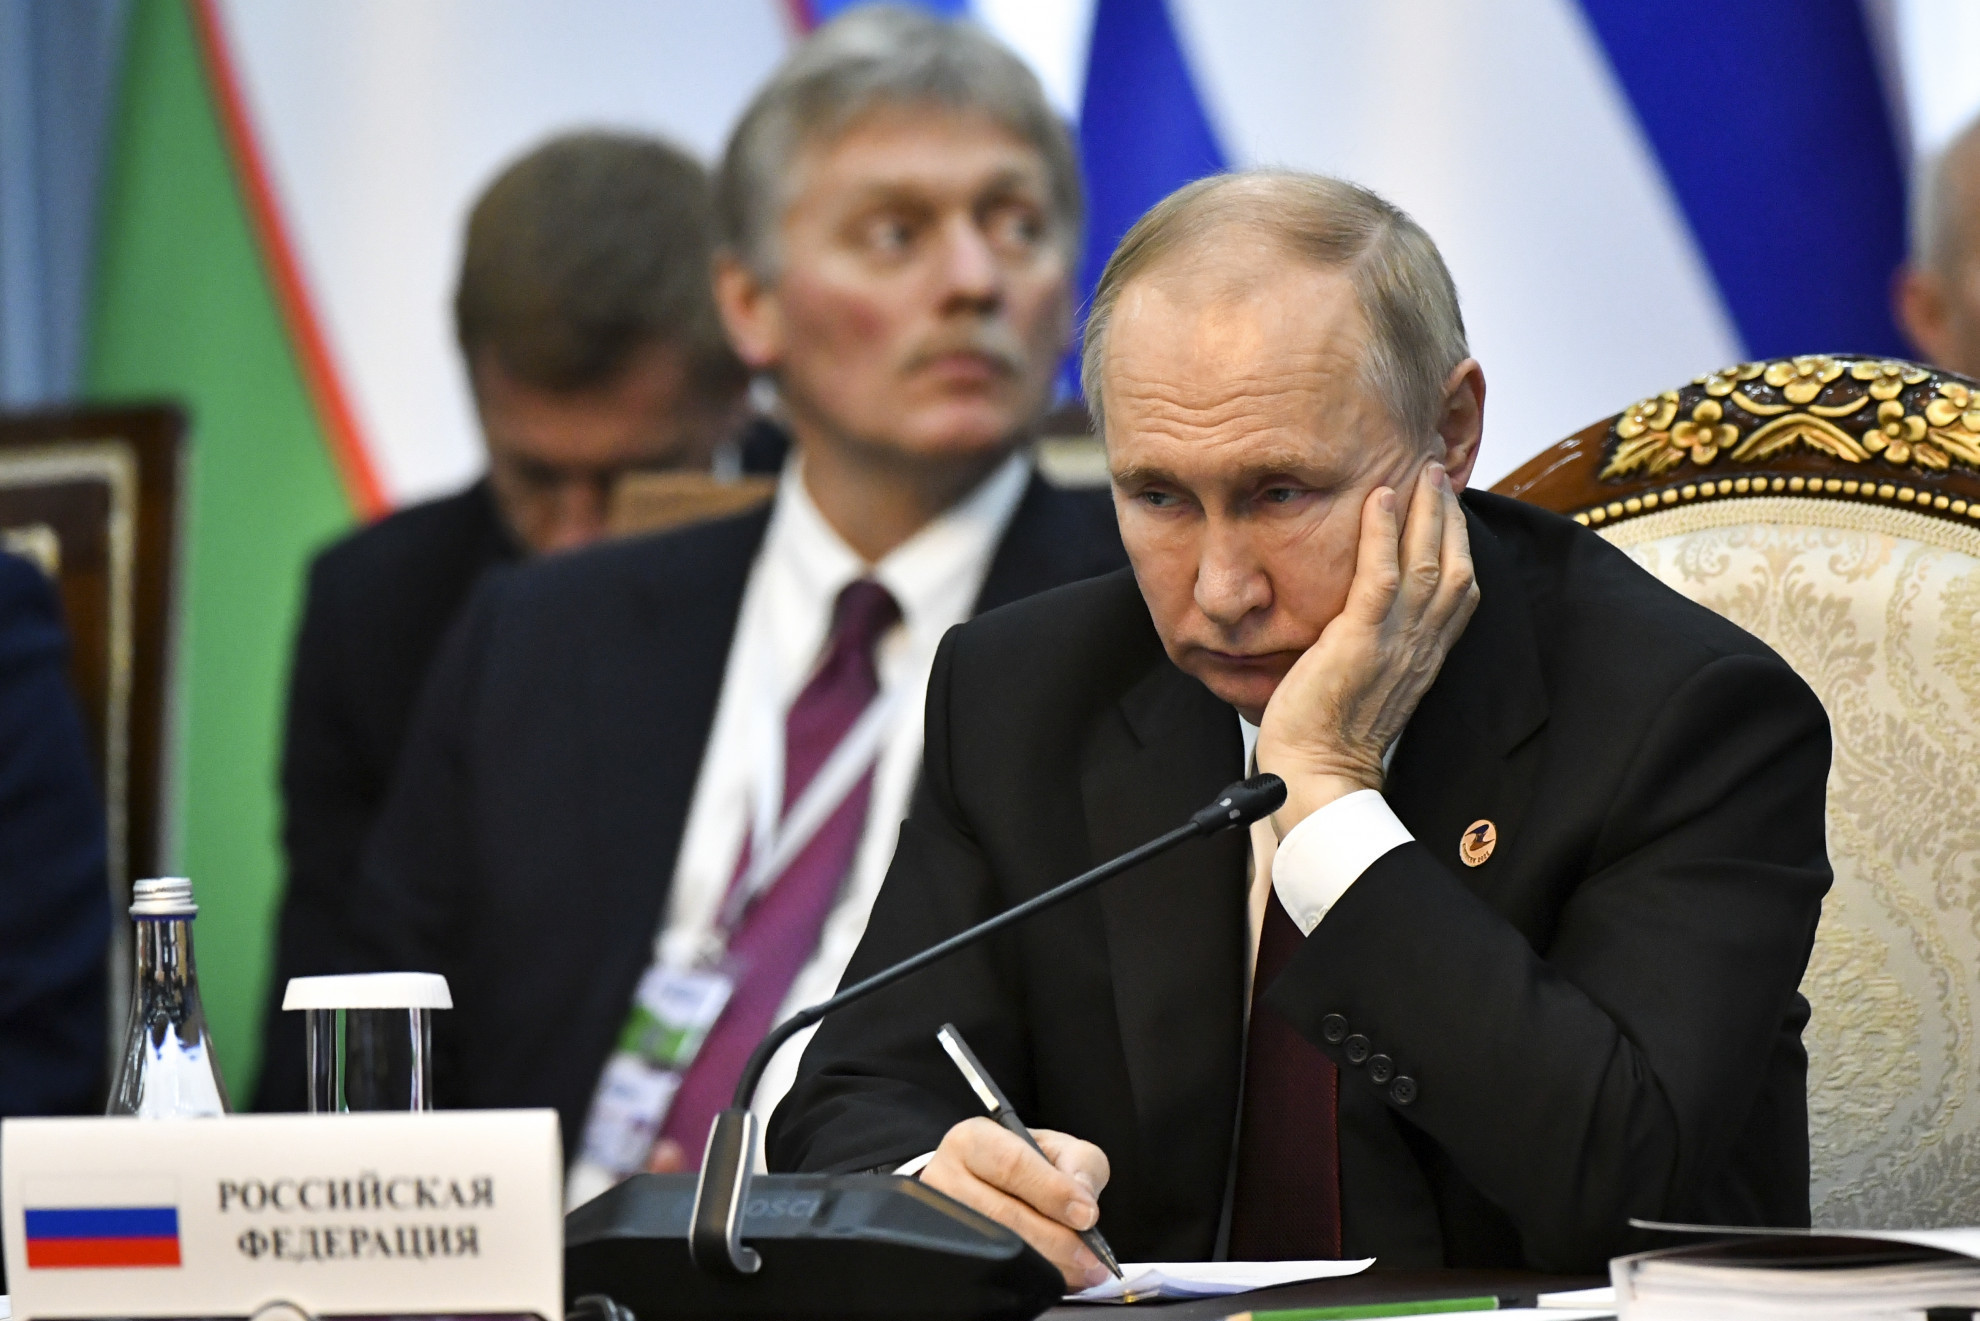 Mandato d'arresto per Putin, il Cremlino: "Ostilità verso il nostro paese, lui è tranquillo"